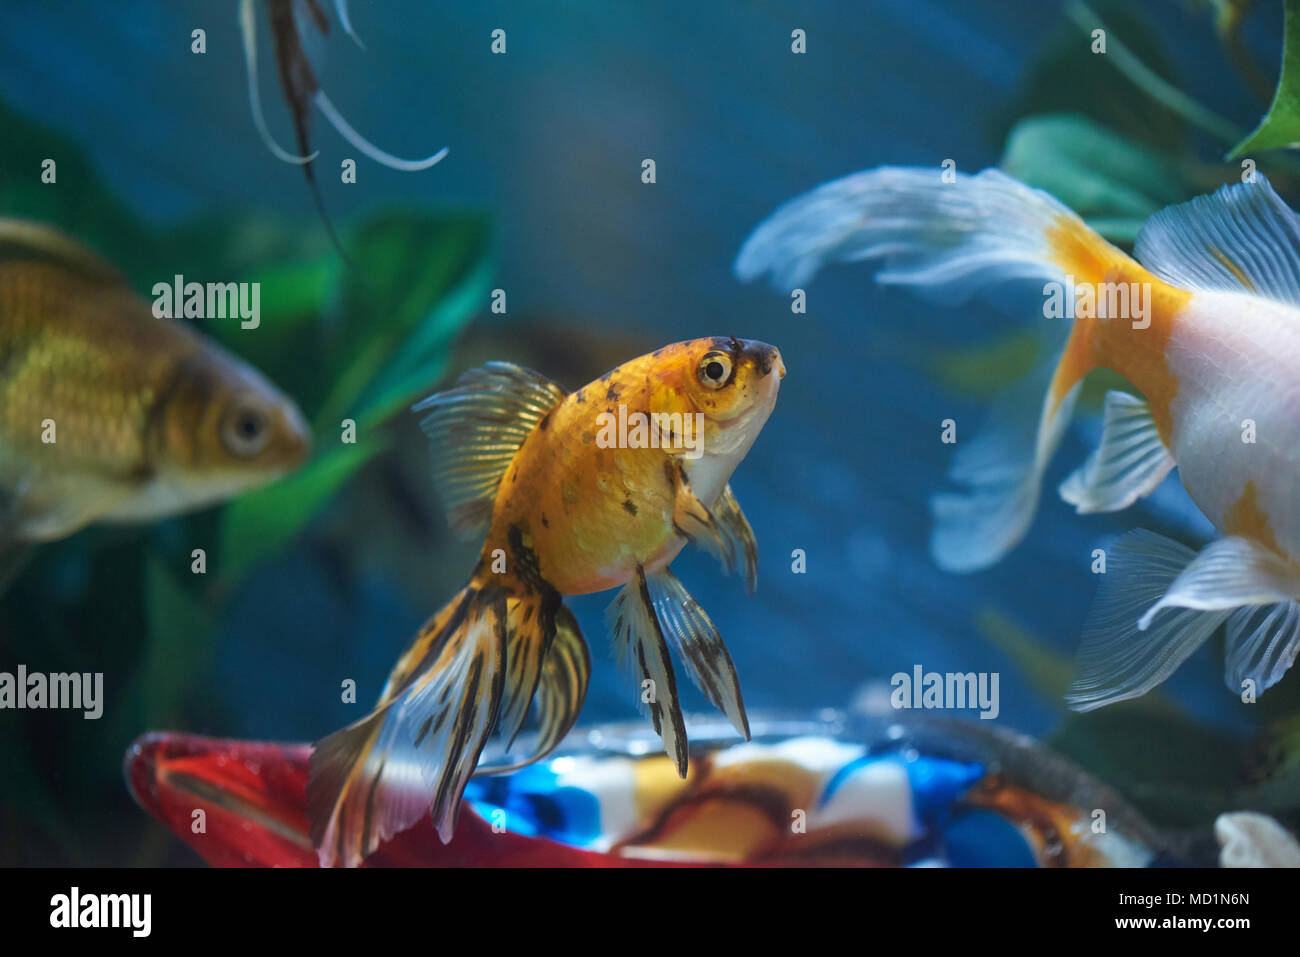 Group of fishes in blue aquarium water. Exotic aquarium theme Stock Photo